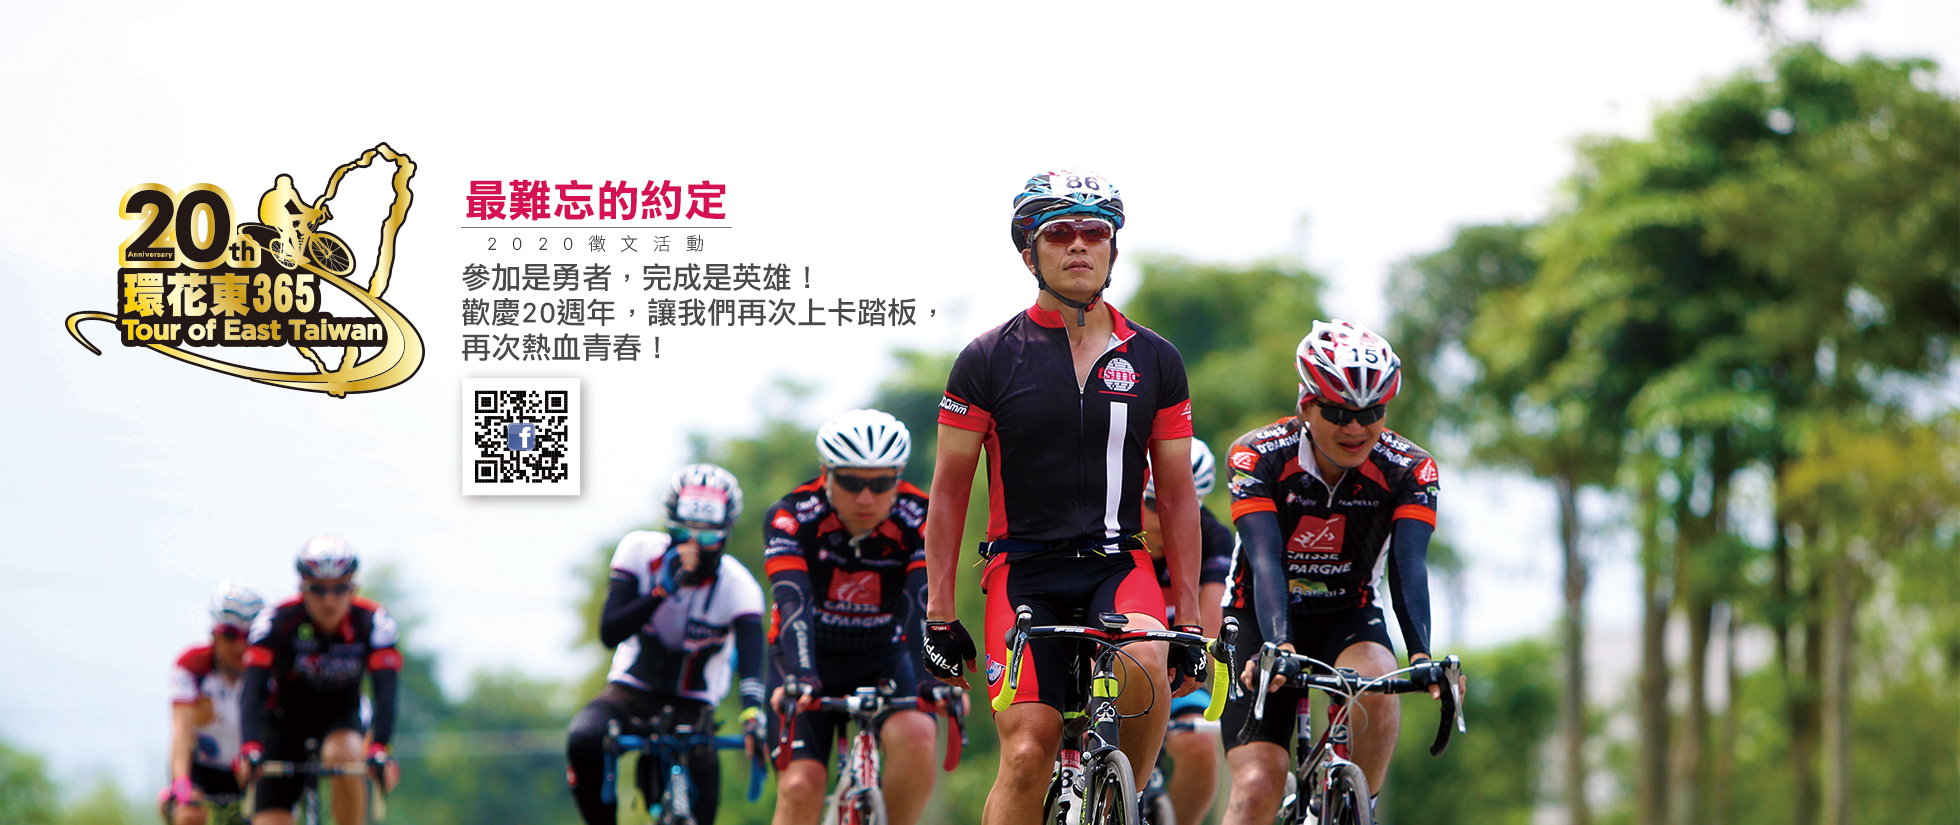 2020環花東365自行車20週年 Tour of East Taiwan